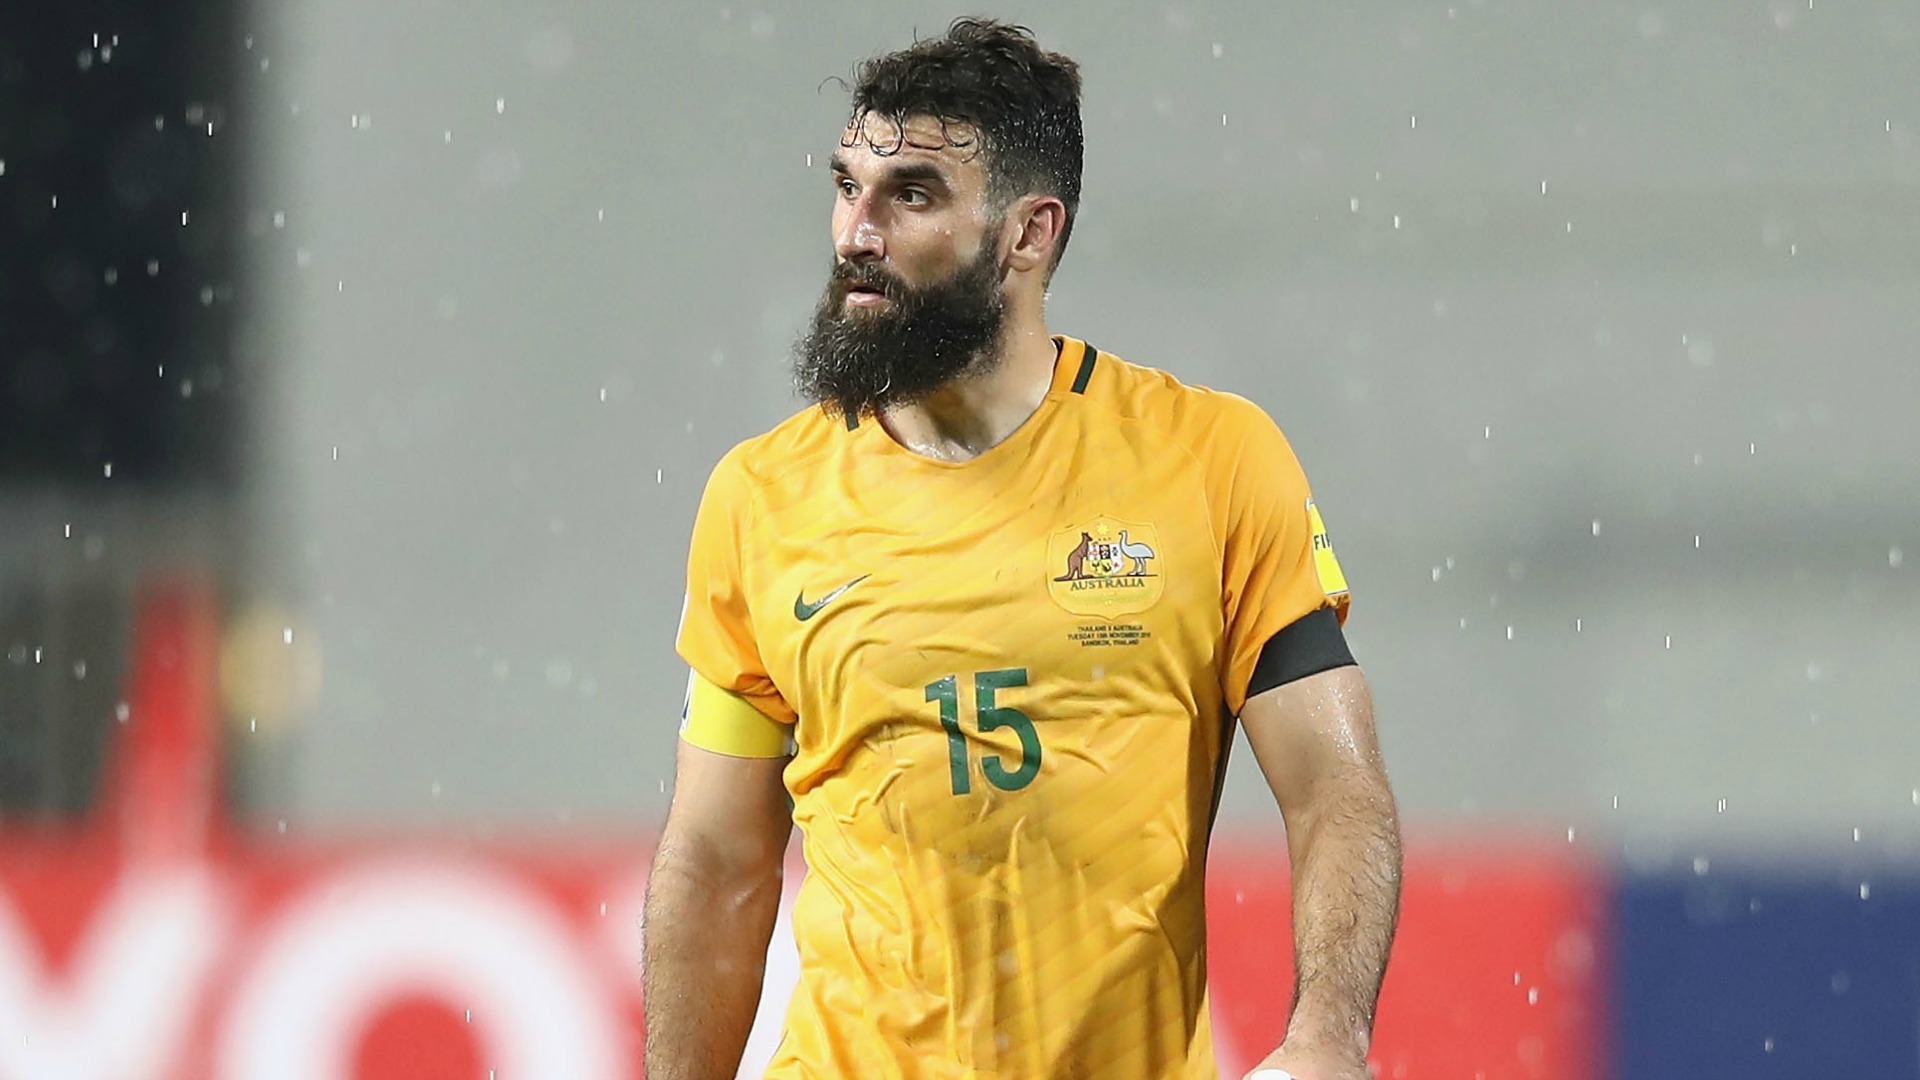 Jedinak named in Socceroos 30-man squad